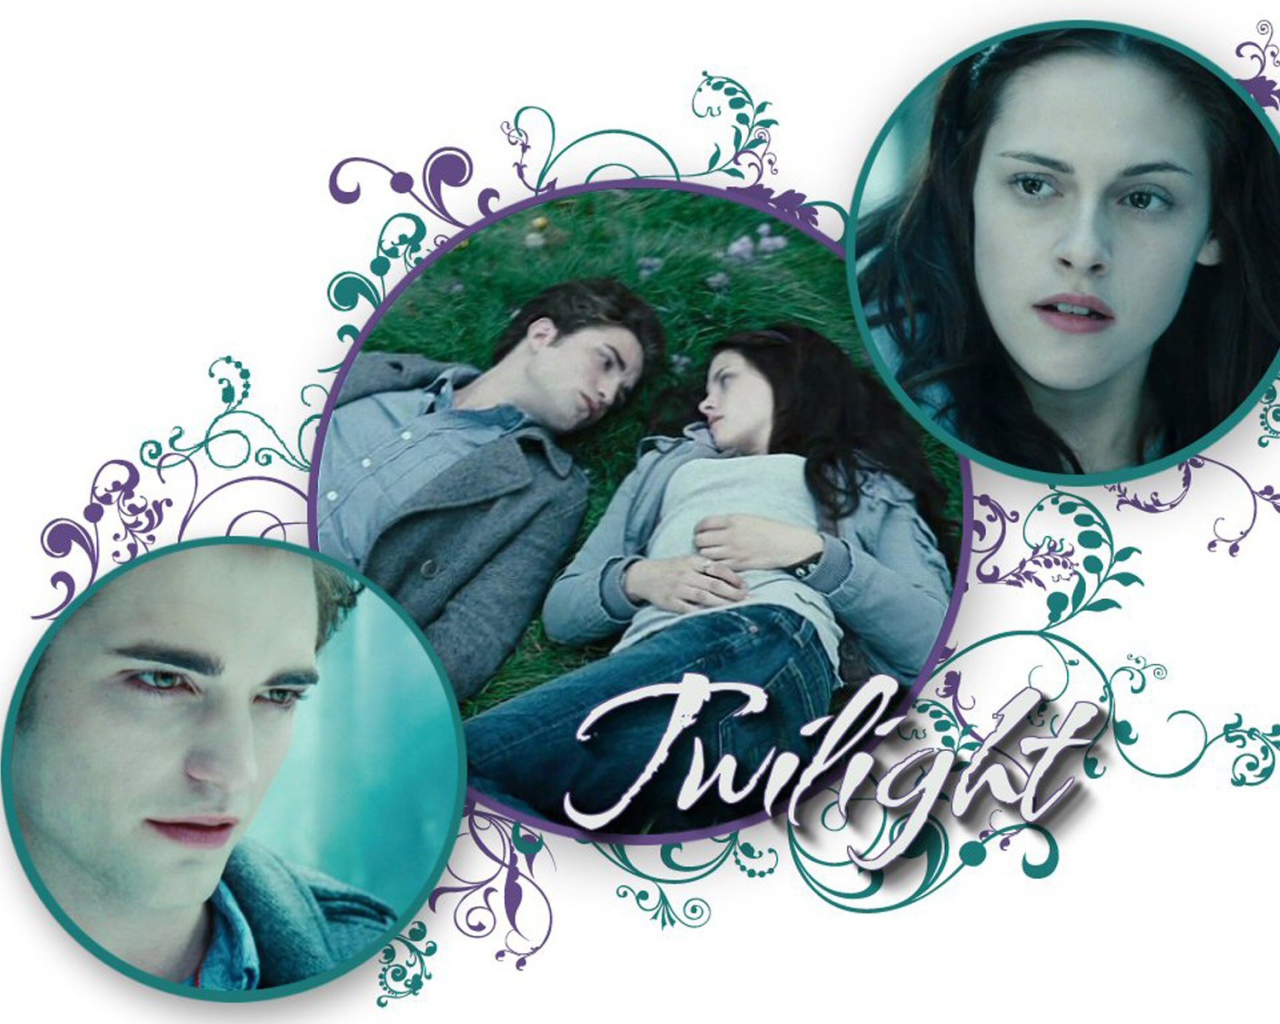 Movies Twilight